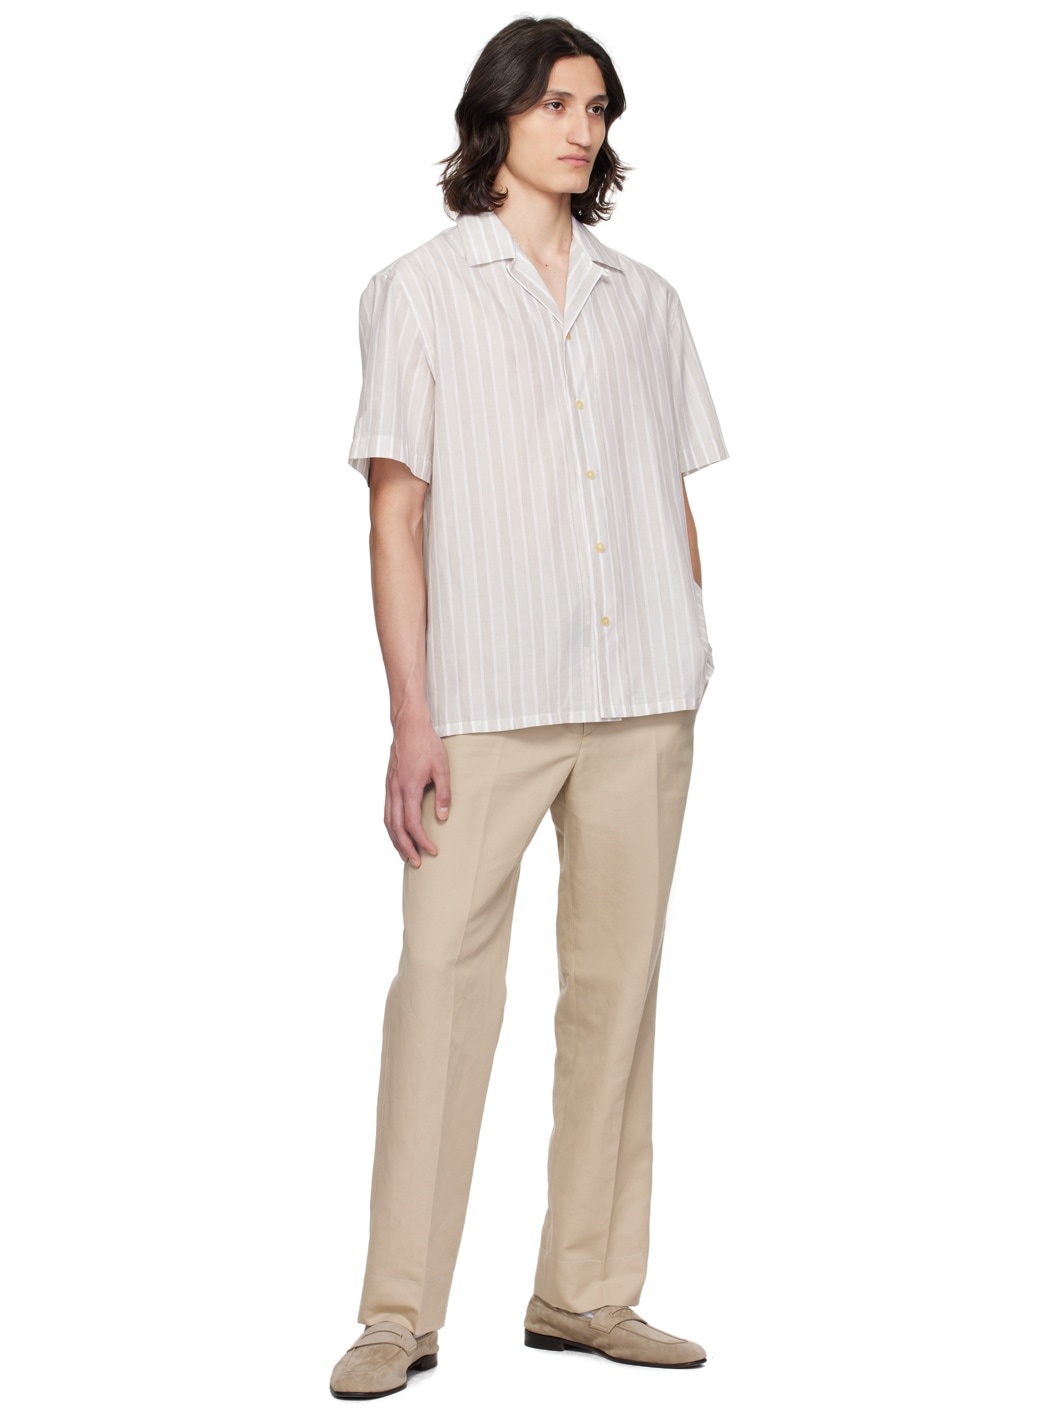 Beige & Off-White Stripe Shirt - 4